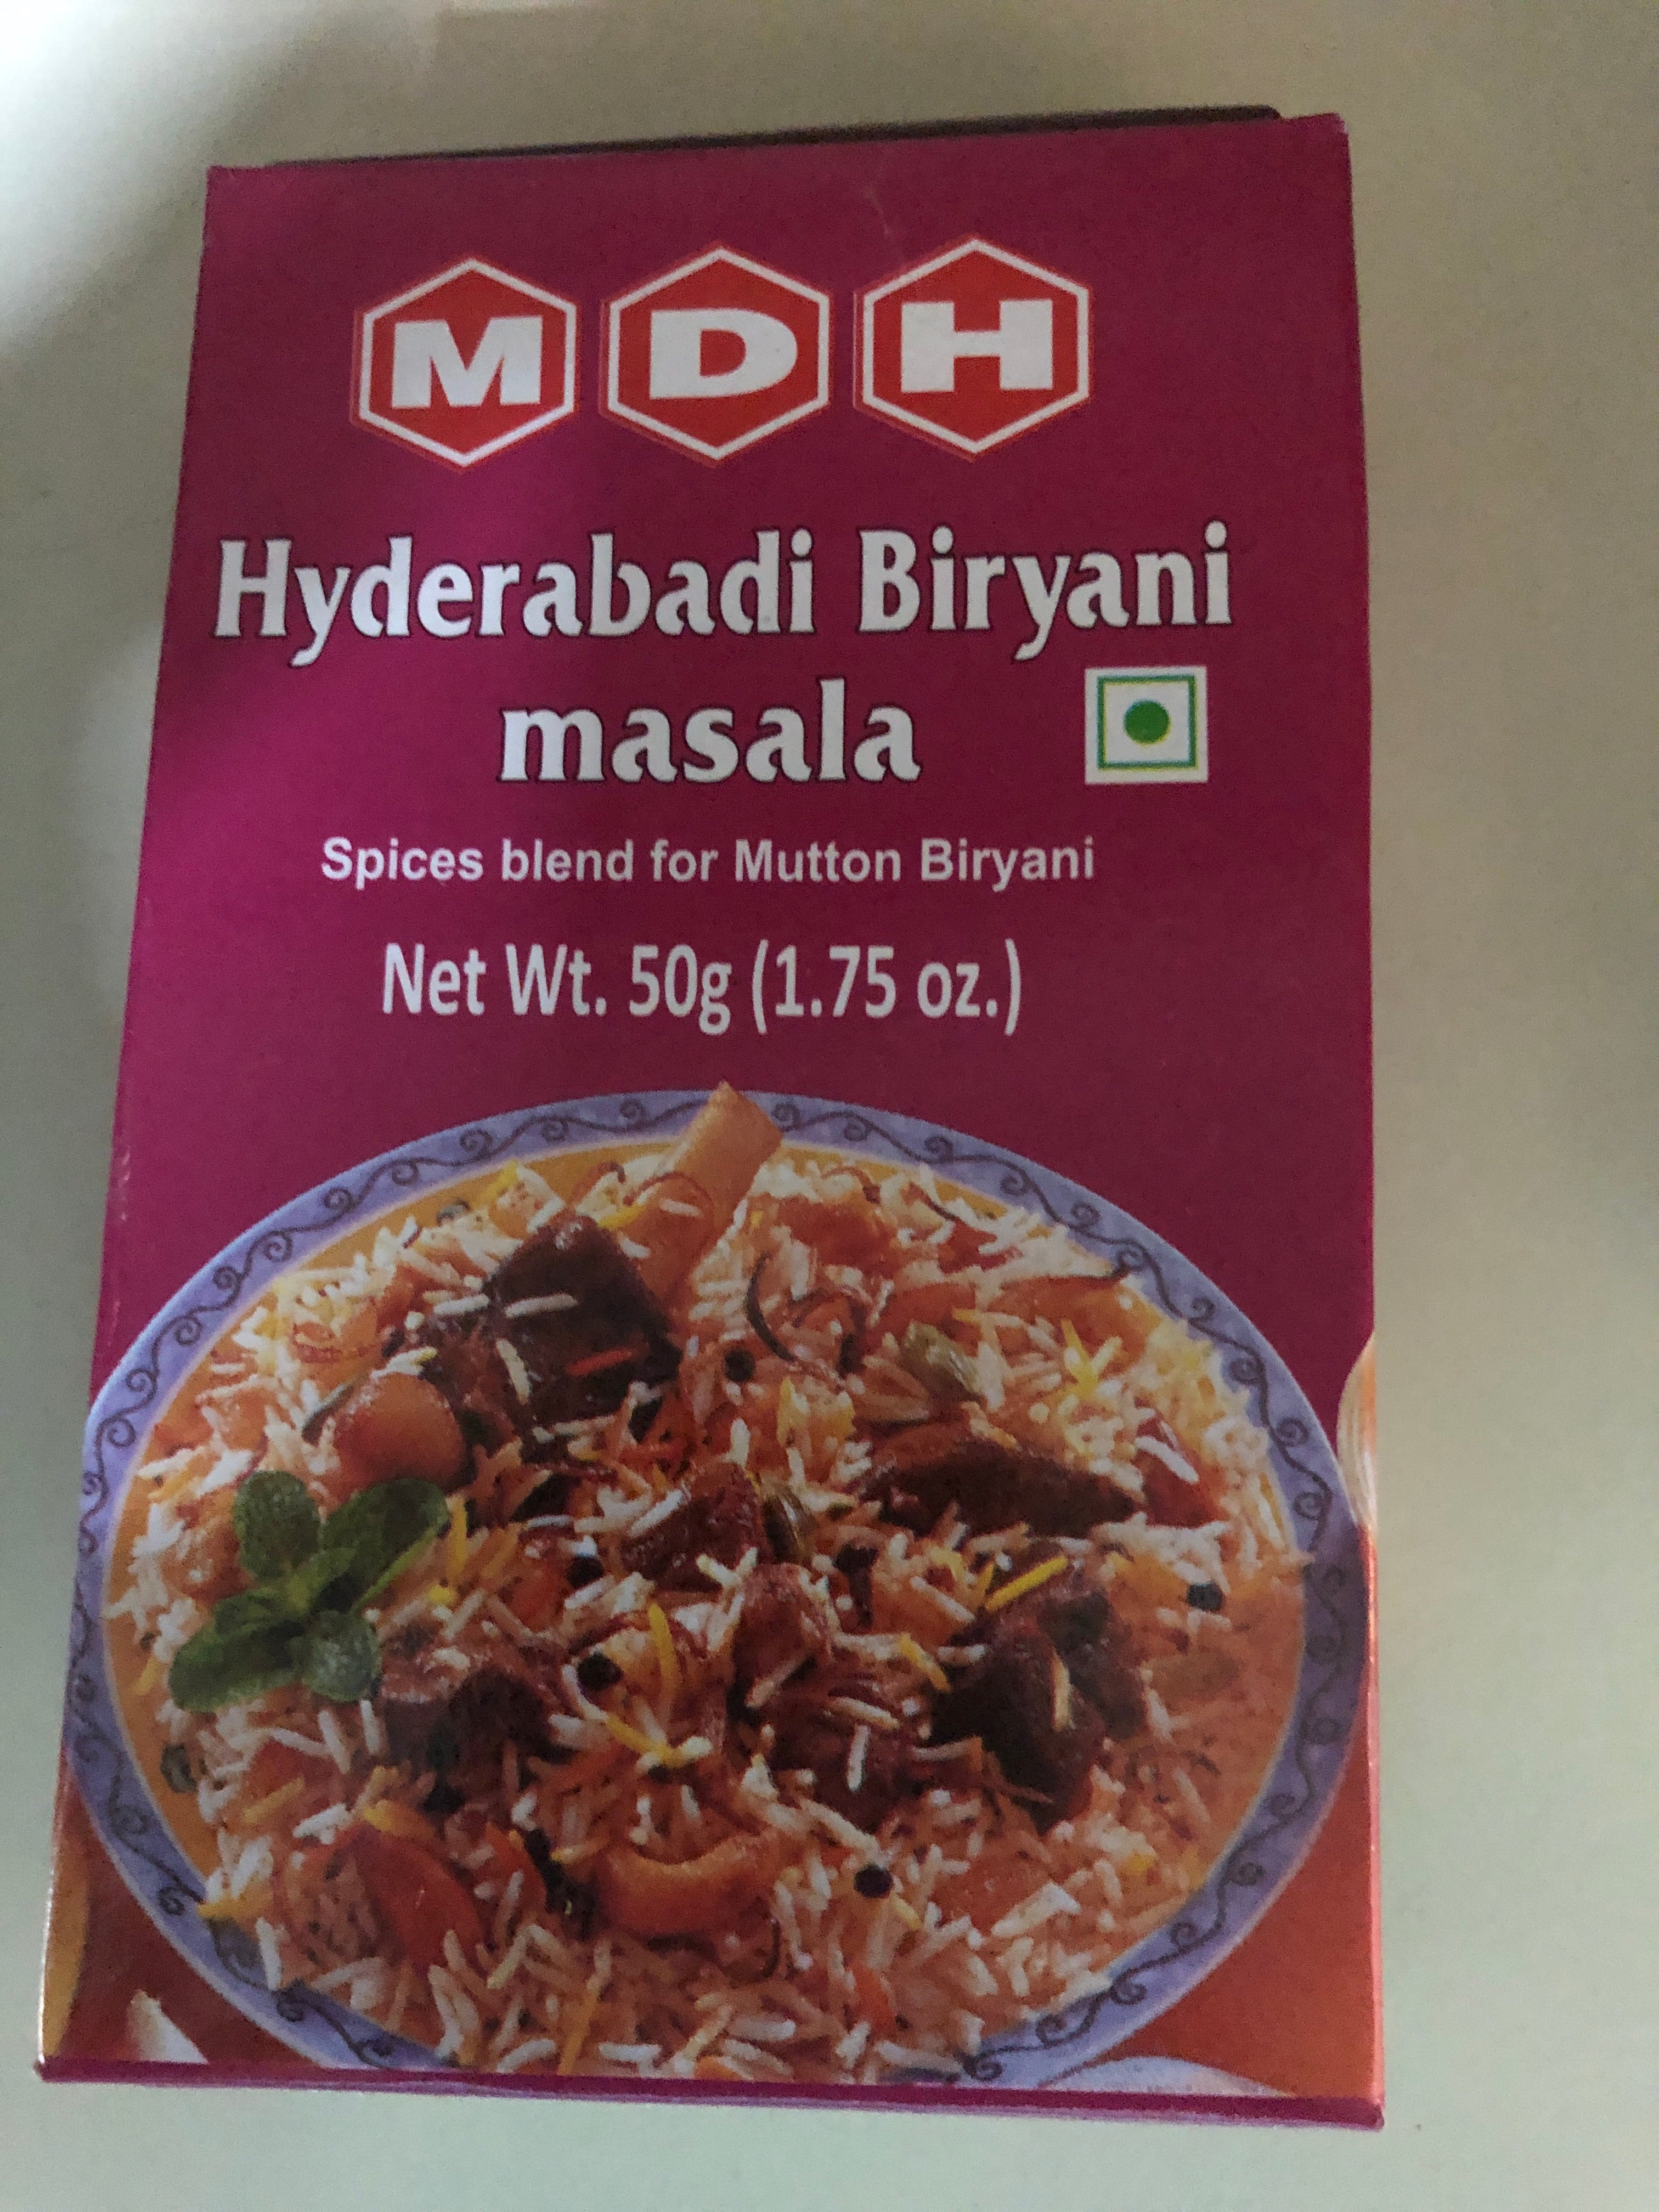 MDH Hyderabadi Biryani Masala